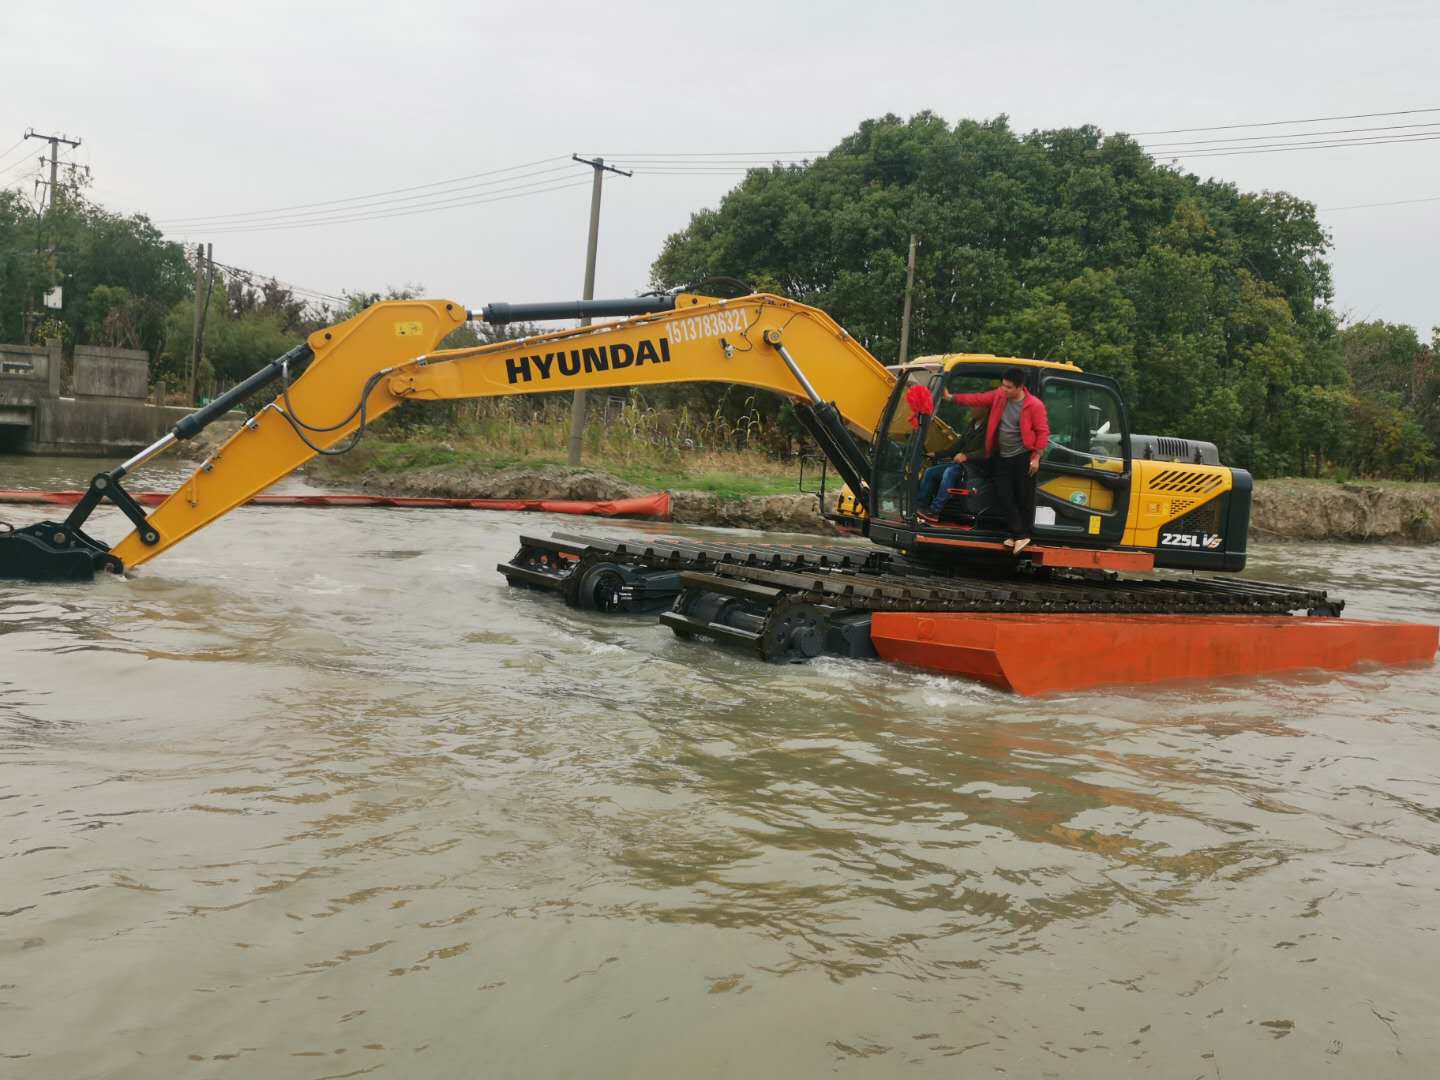 鹤壁大型水上挖掘机租赁 水陆挖掘机出租